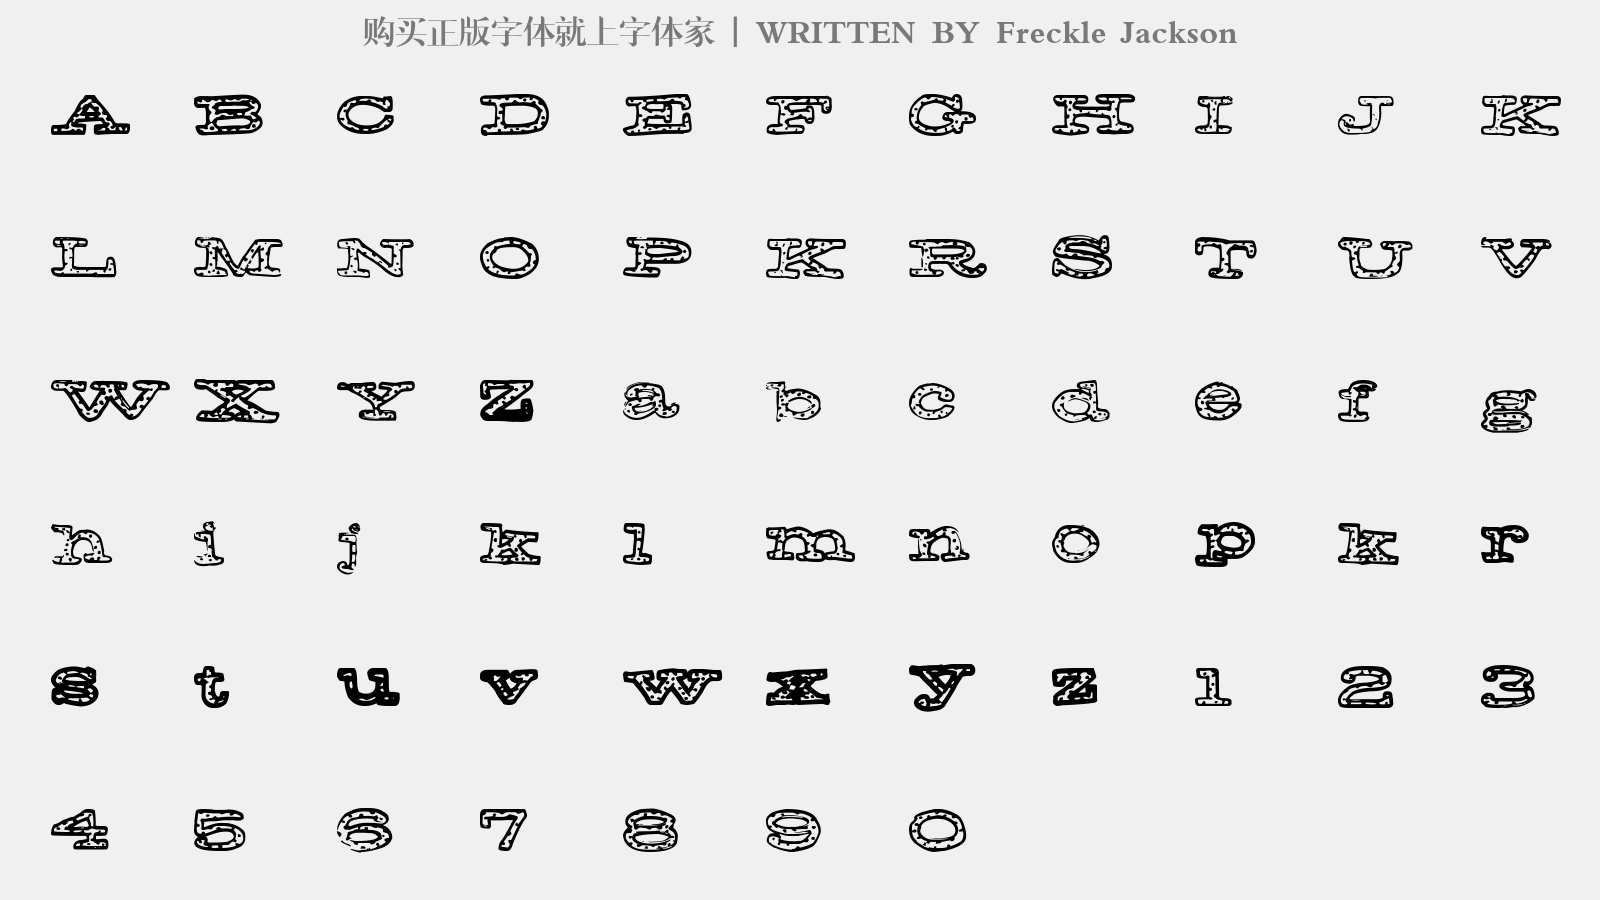 Freckle Jackson - 大写字母/小写字母/数字